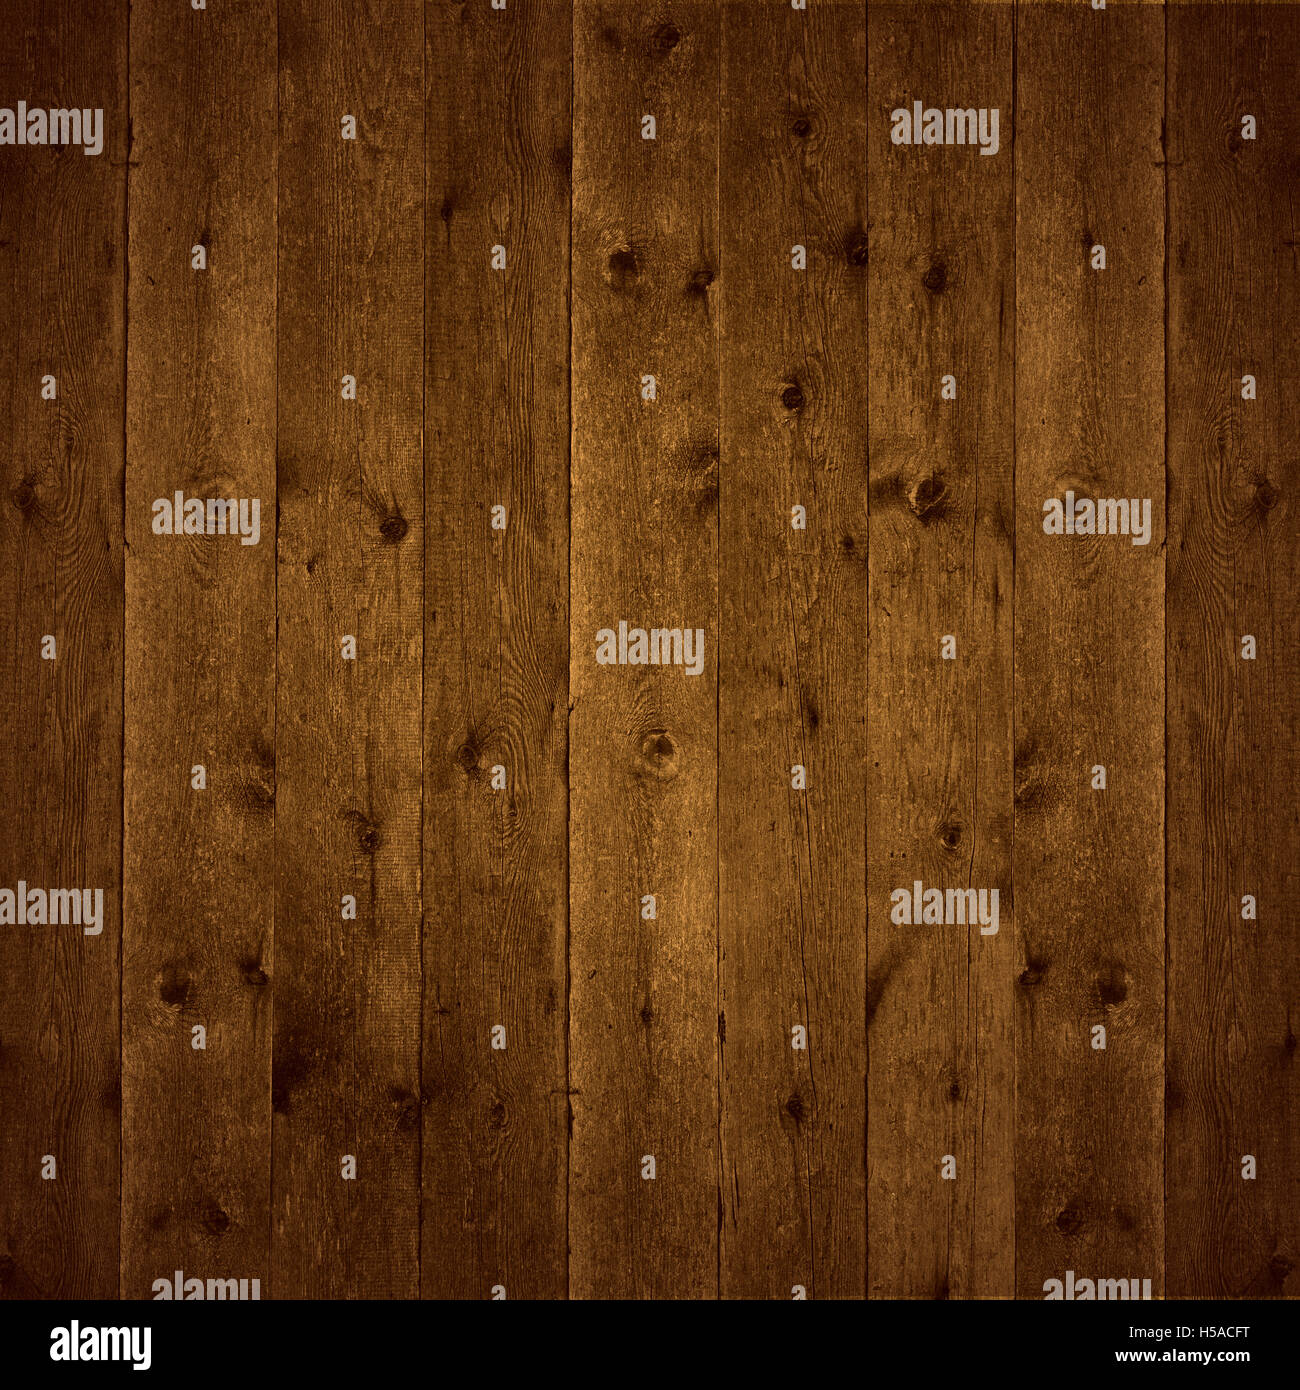 La texture en bois brun ou wood grain pattern background Banque D'Images